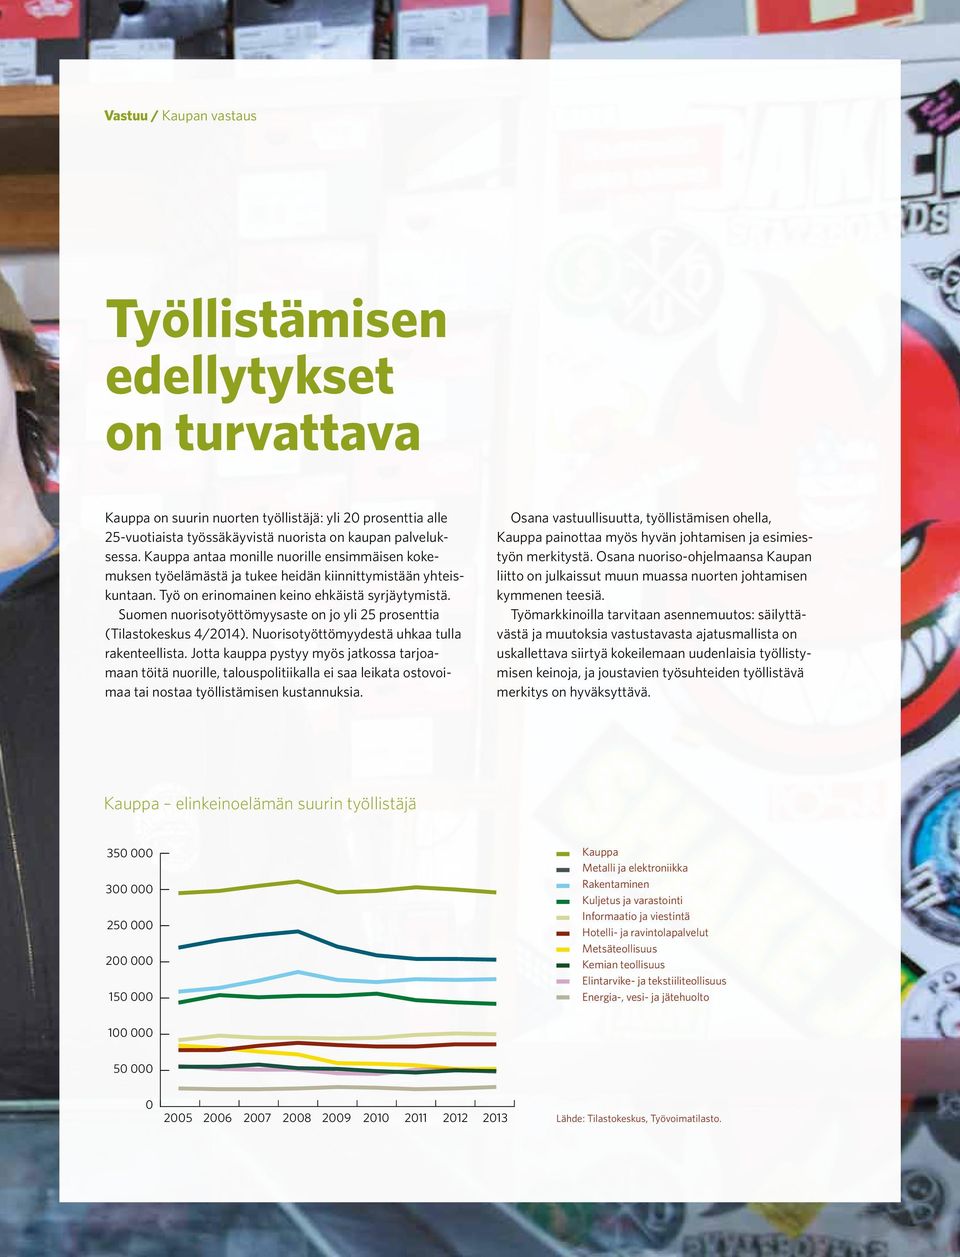 Suomen nuorisotyöttömyysaste on jo yli 25 prosenttia (Tilastokeskus 4/2014). Nuorisotyöttömyydestä uhkaa tulla rakenteellista.